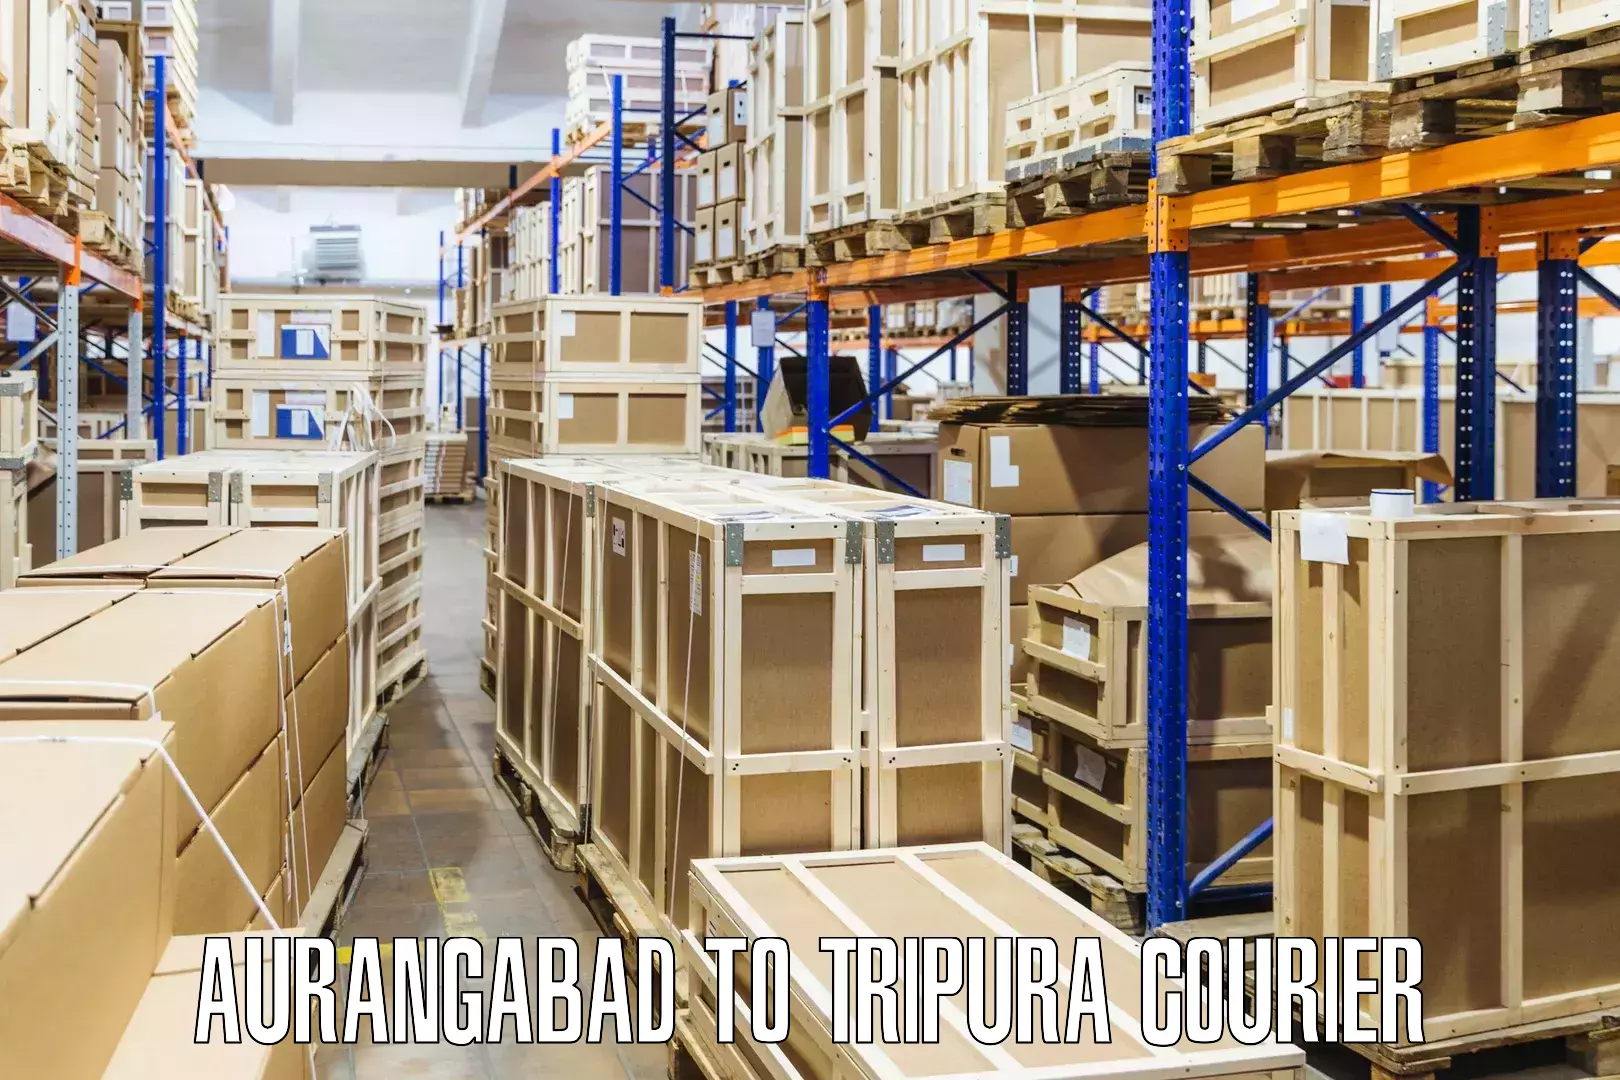 Global parcel delivery Aurangabad to Dharmanagar